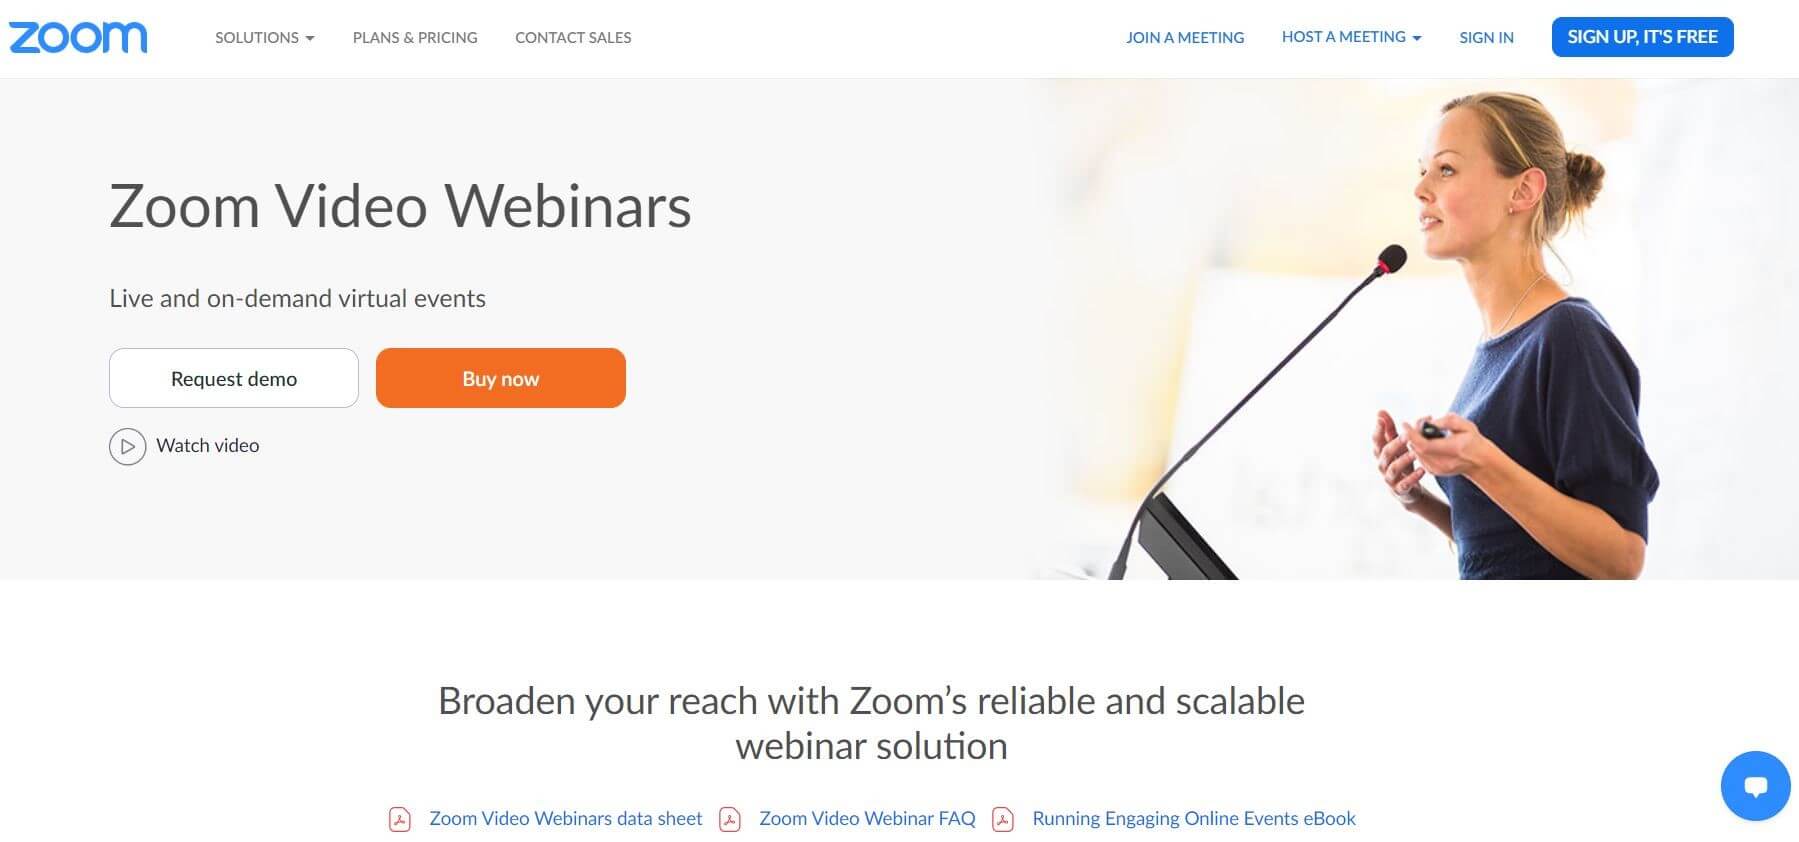 The Zoom video webinars homepage